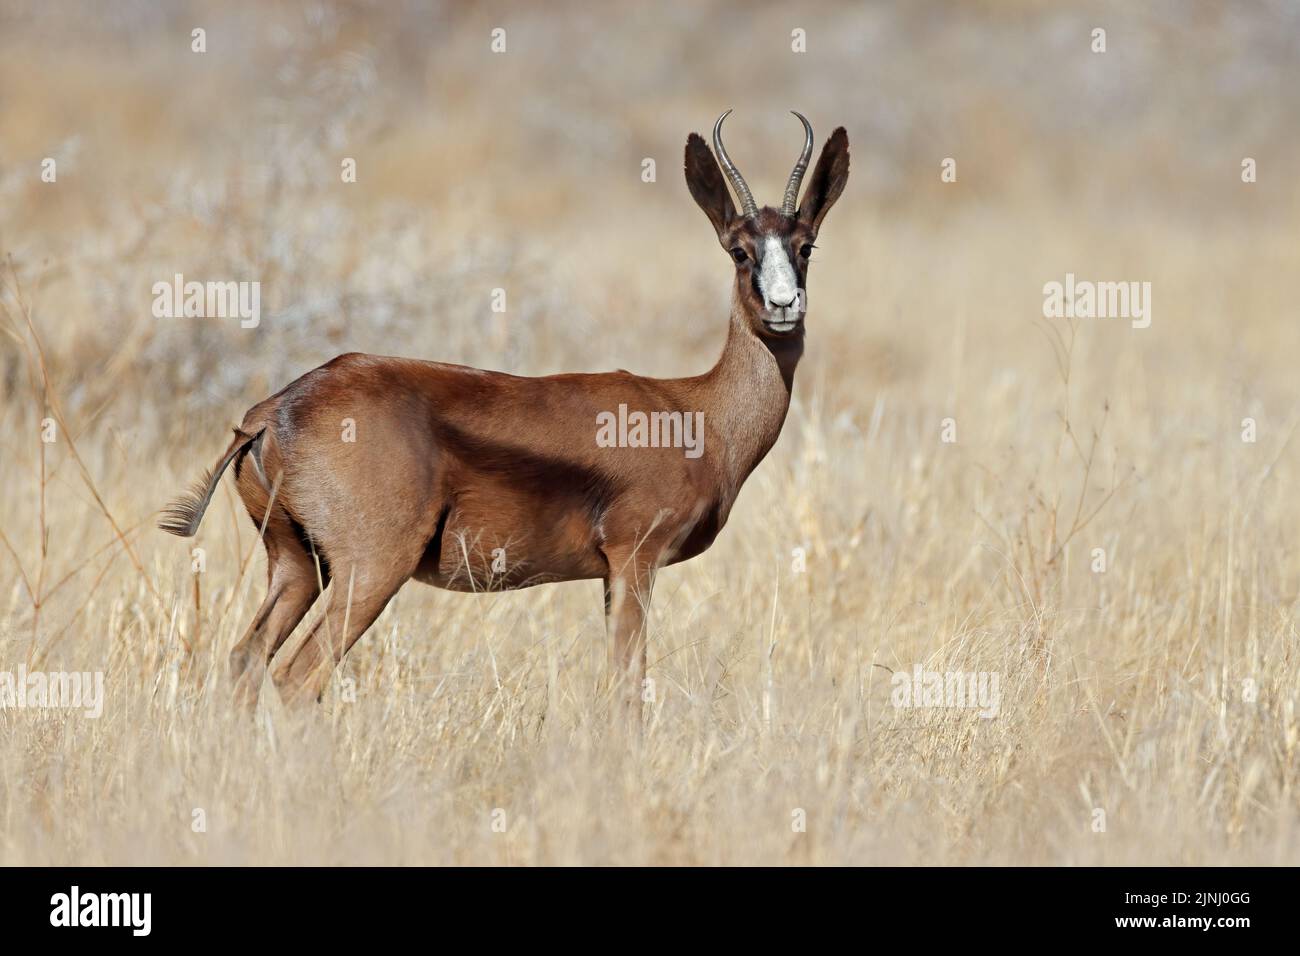 A rare black springbok antelope (Antidorcas marsupialis) in grassland, South Africa Stock Photo